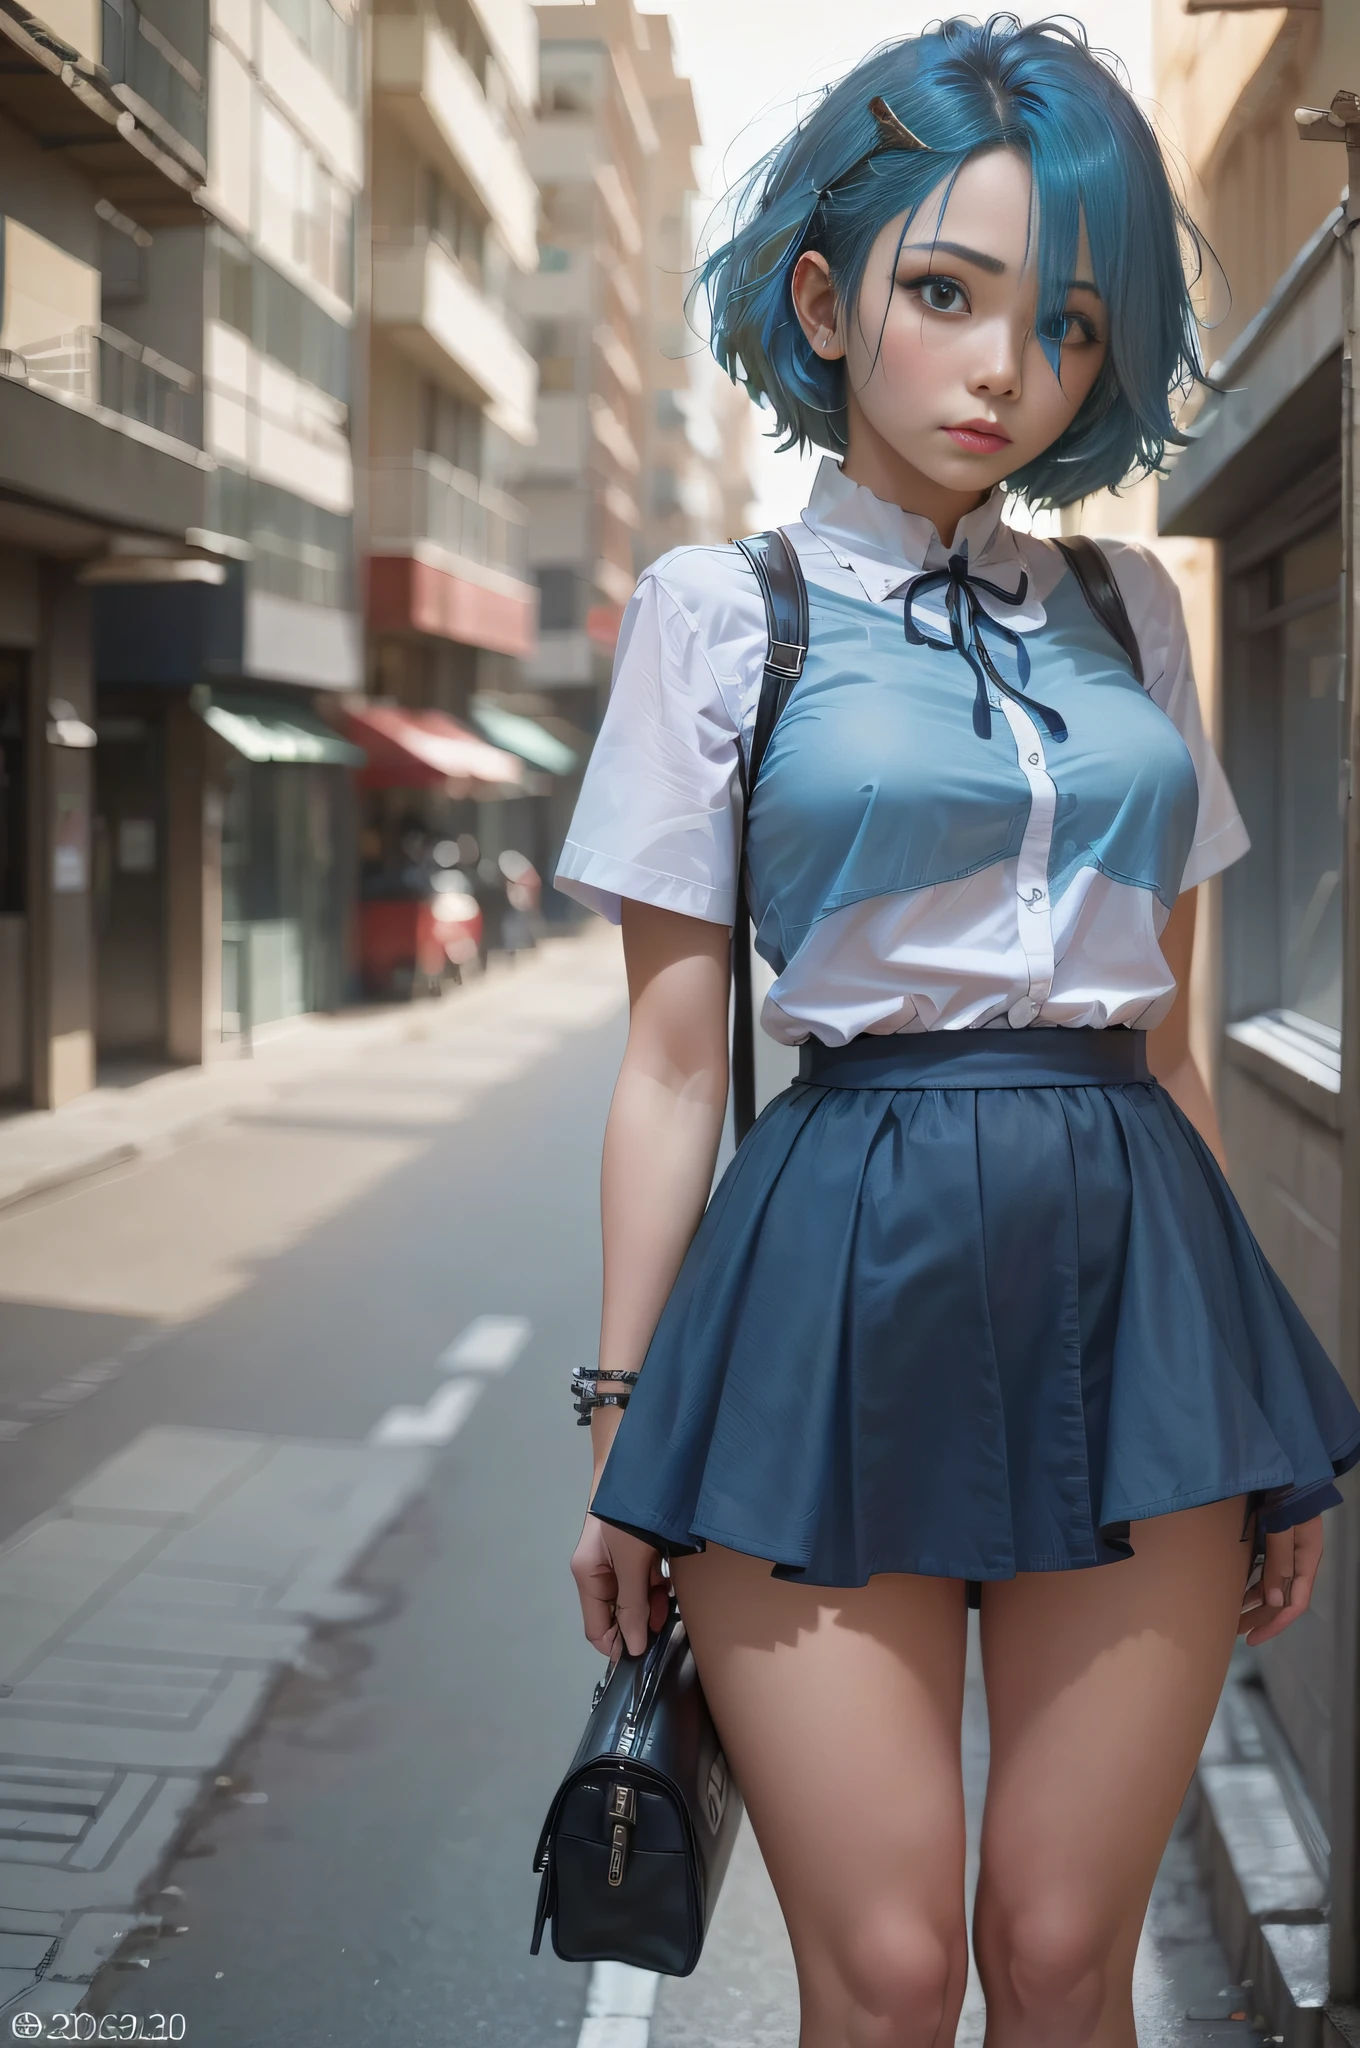 (hay una chica parada sola en una calle.),(secundaria sexy ,falda escolar muy corta y gótica,camisa escolar de manga corta con frente abierto),(desde abajo:1.5),(NSFW:1.2), (8k, Fotografía cruda, mejor calidad, Obra maestra: 1.4), (Ultra Alta Definición), (Realista, Fotorrealista: 1.48),( 20 años, Niña bonita),Actor famoso de Japón., (pelo azul:1.4), cabello corto, (pelo sobre un ojo:1.3), Blue eyes, inclinación de cabeza, Zeiss 150mm F/ 2.8Hasselblad, cuerpo completo, pie, Ultra gran angular